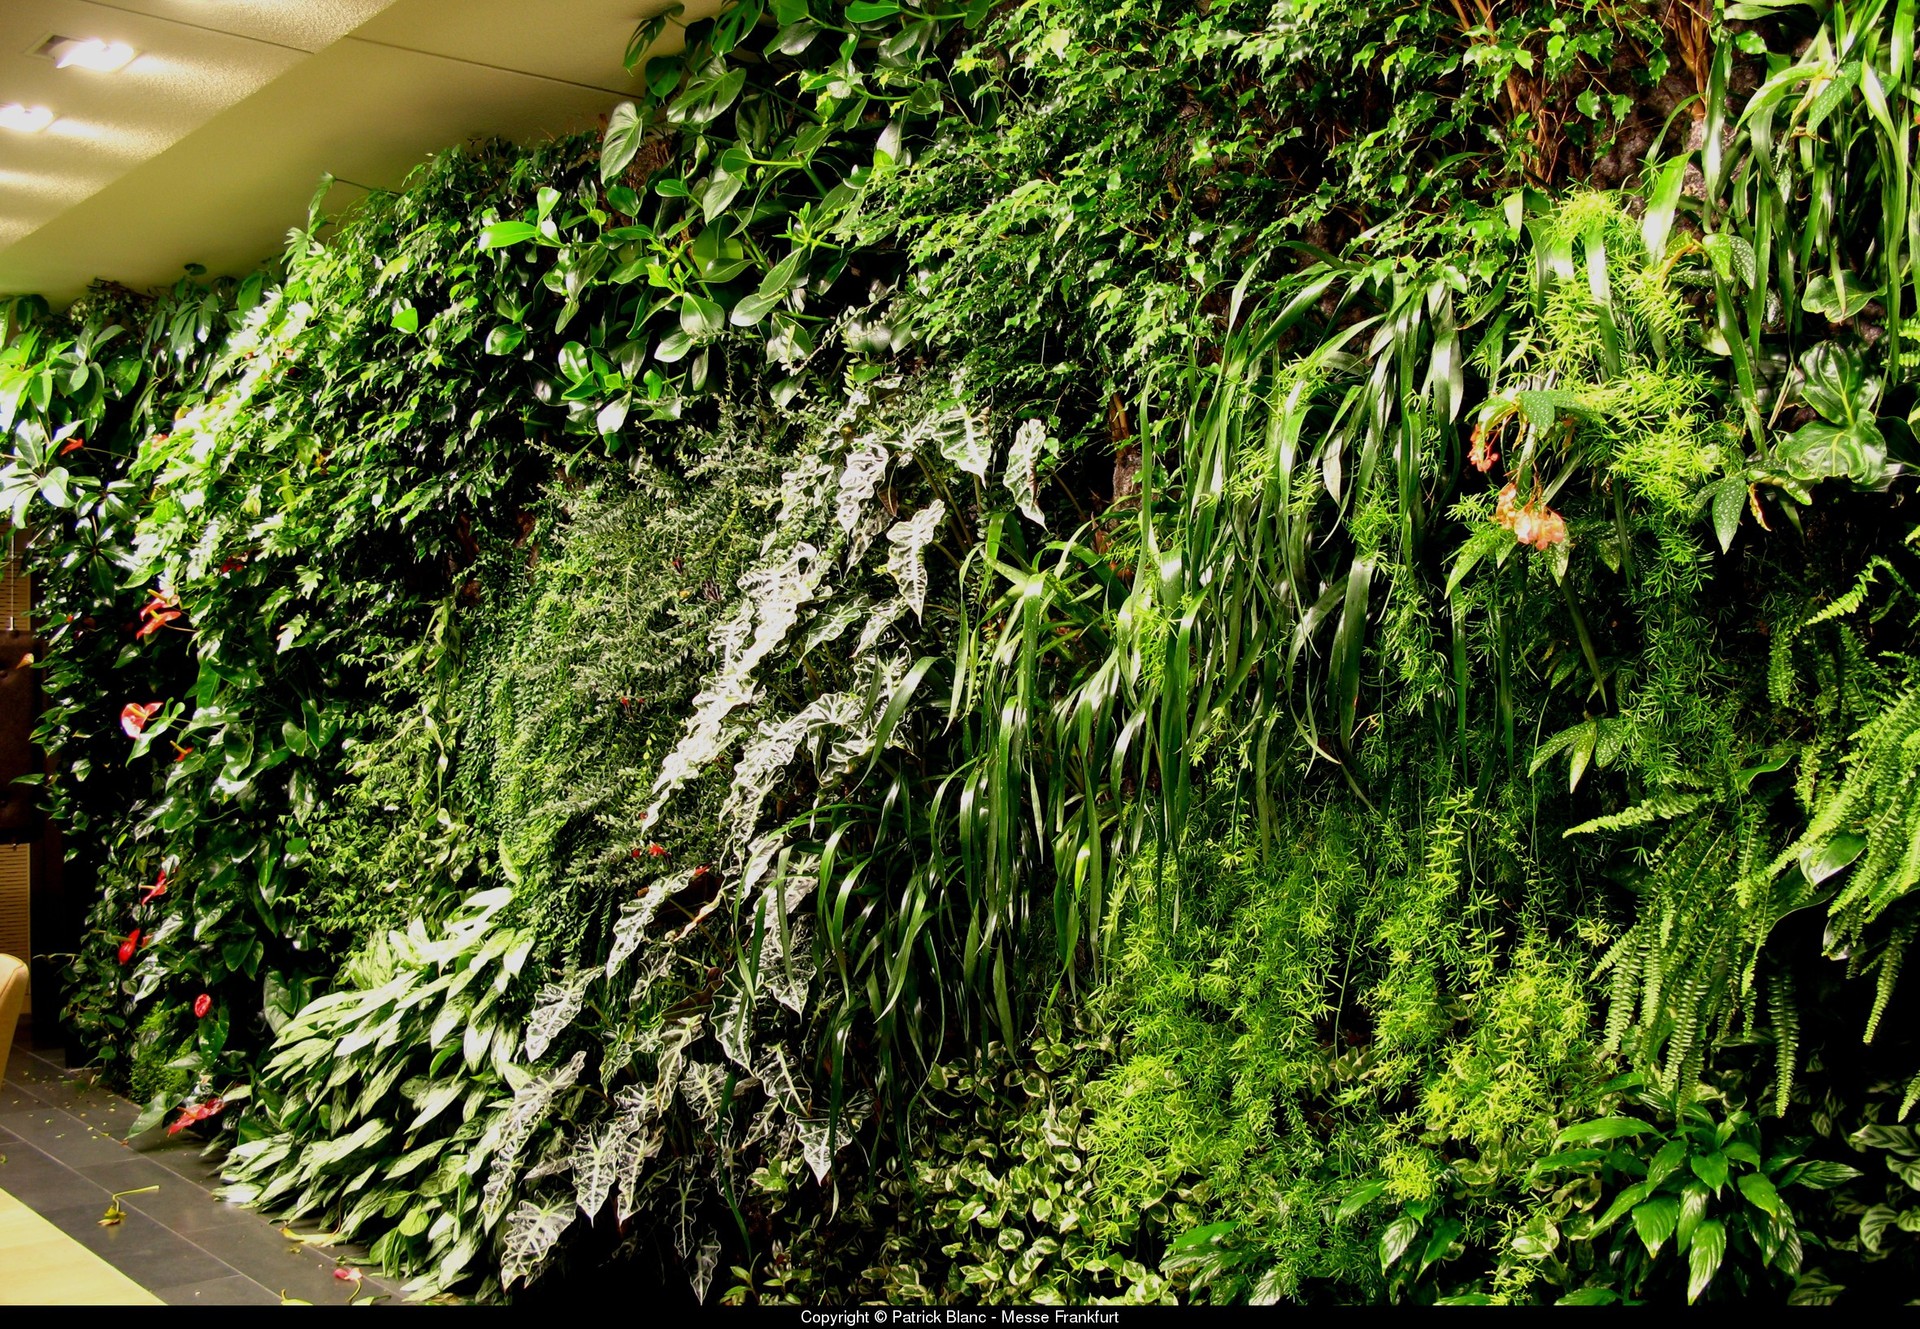 室外墙面绿化——“植物墙绿化”-室内软景-陕西源景园林有限公司|西安植物墙制作